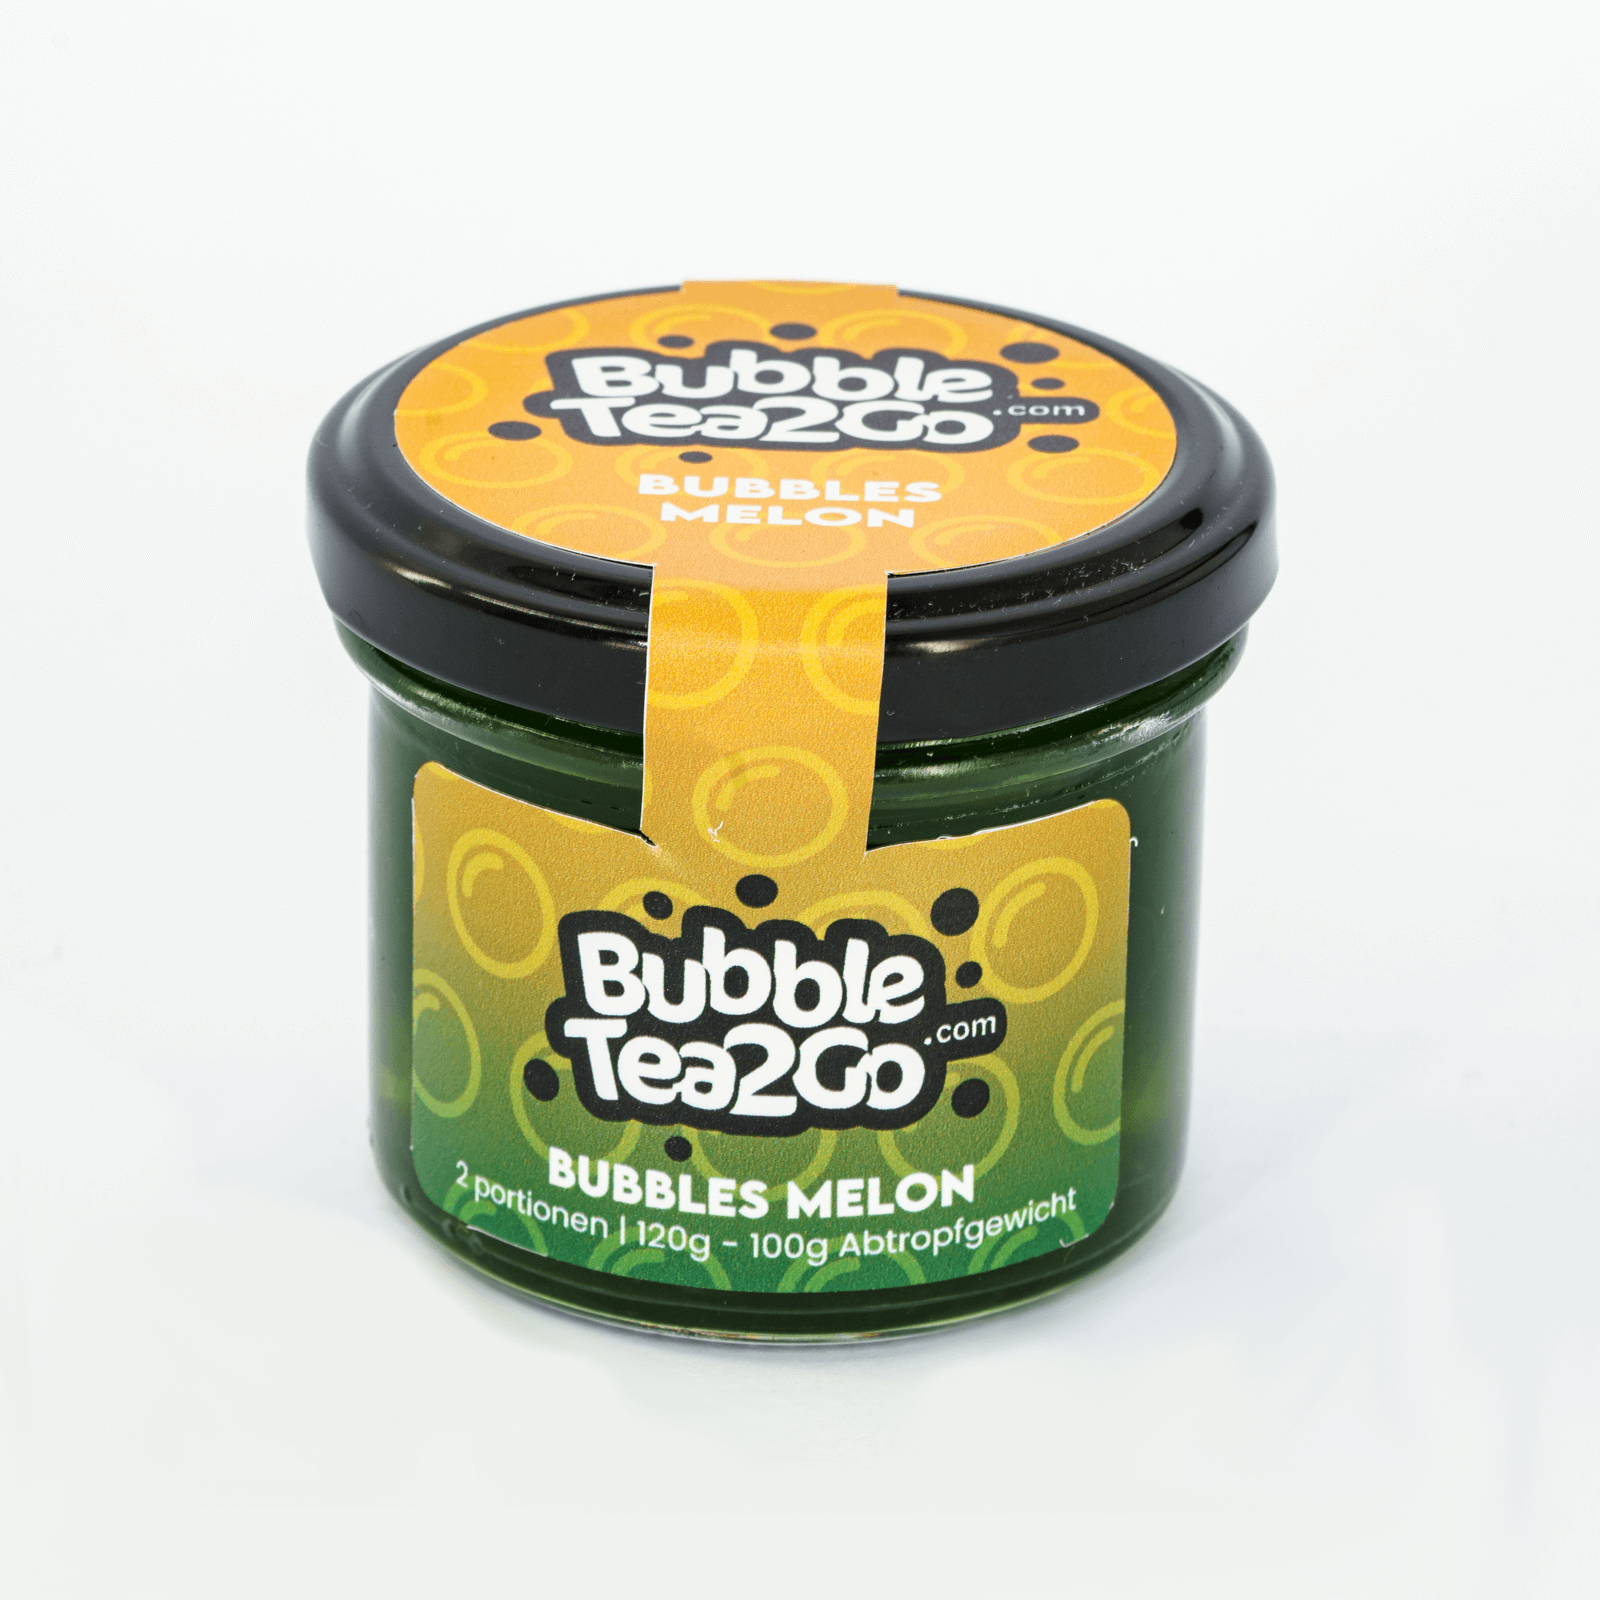 Bubbles - Melon 2 servings (120g)